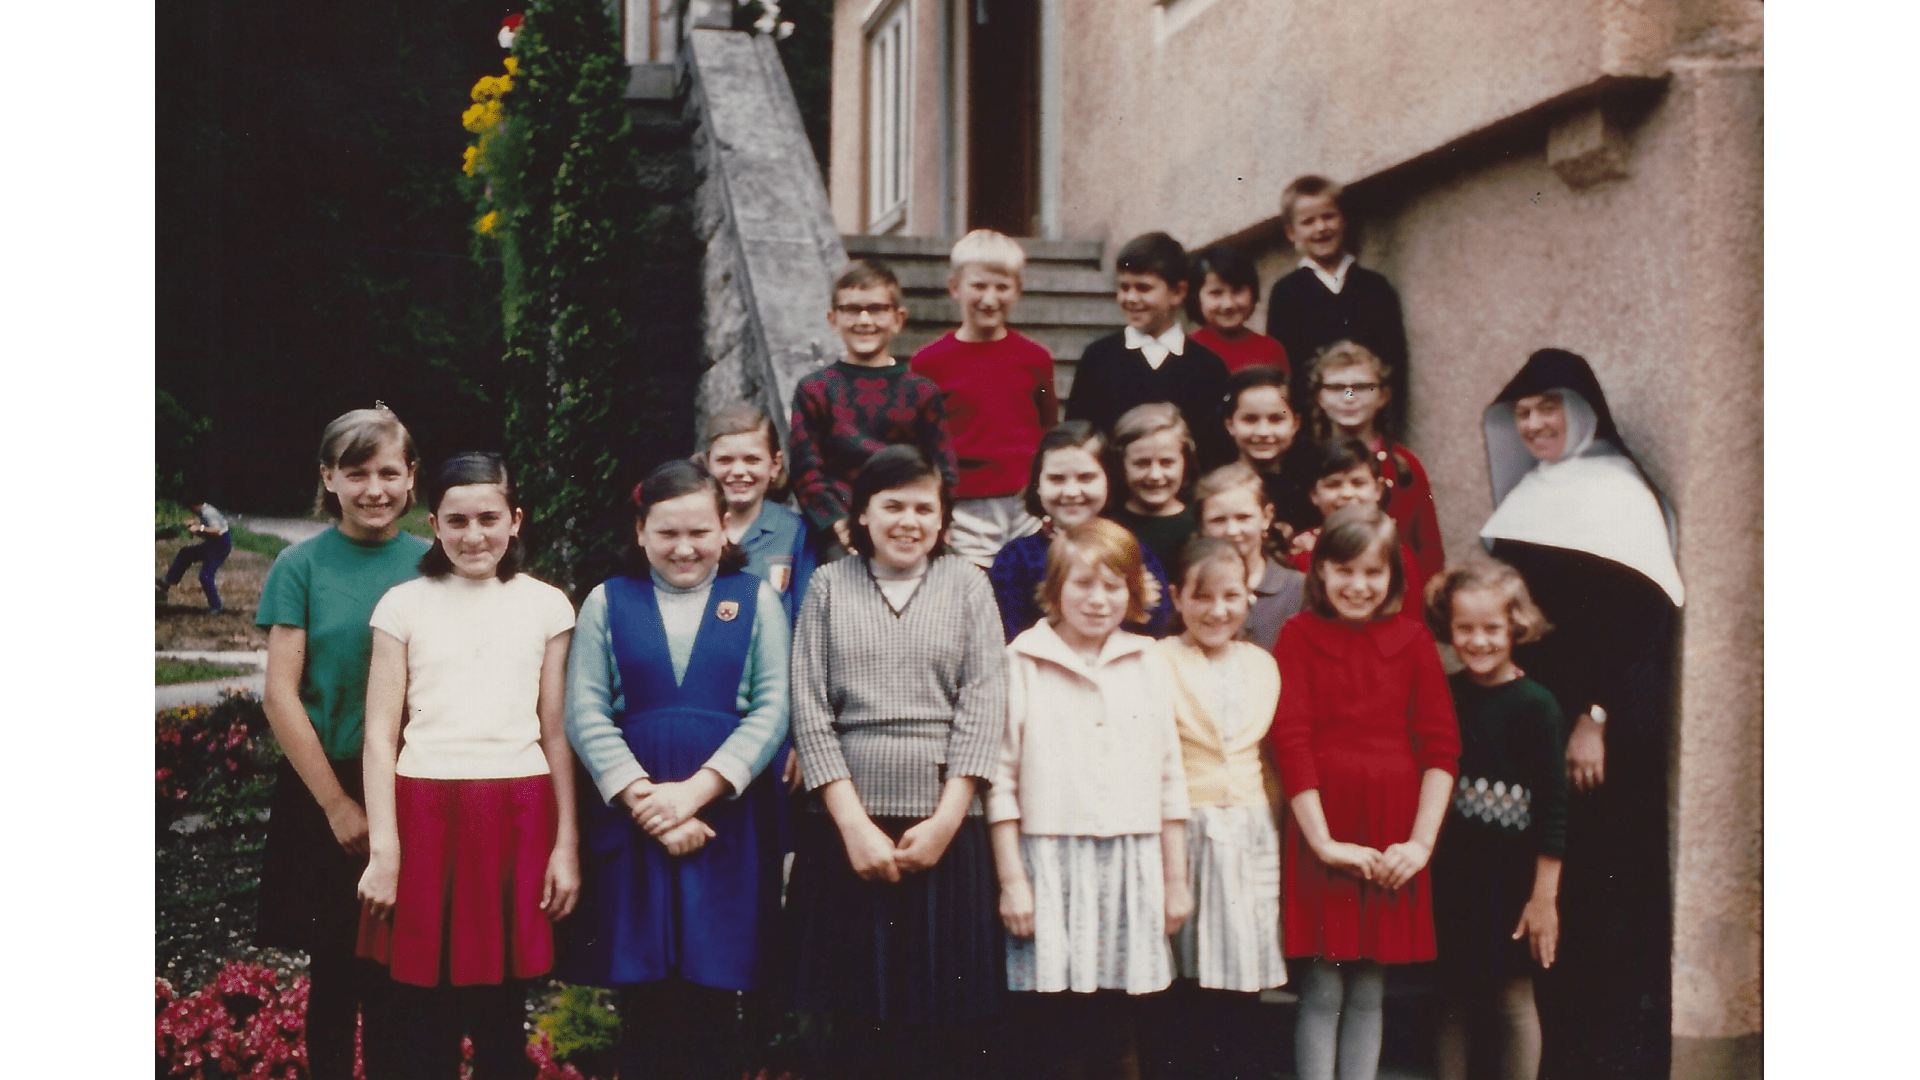 Lockere Entspannung zwischen dem Unterricht 1966 – Foto: Archiv Arme Schulschwestern